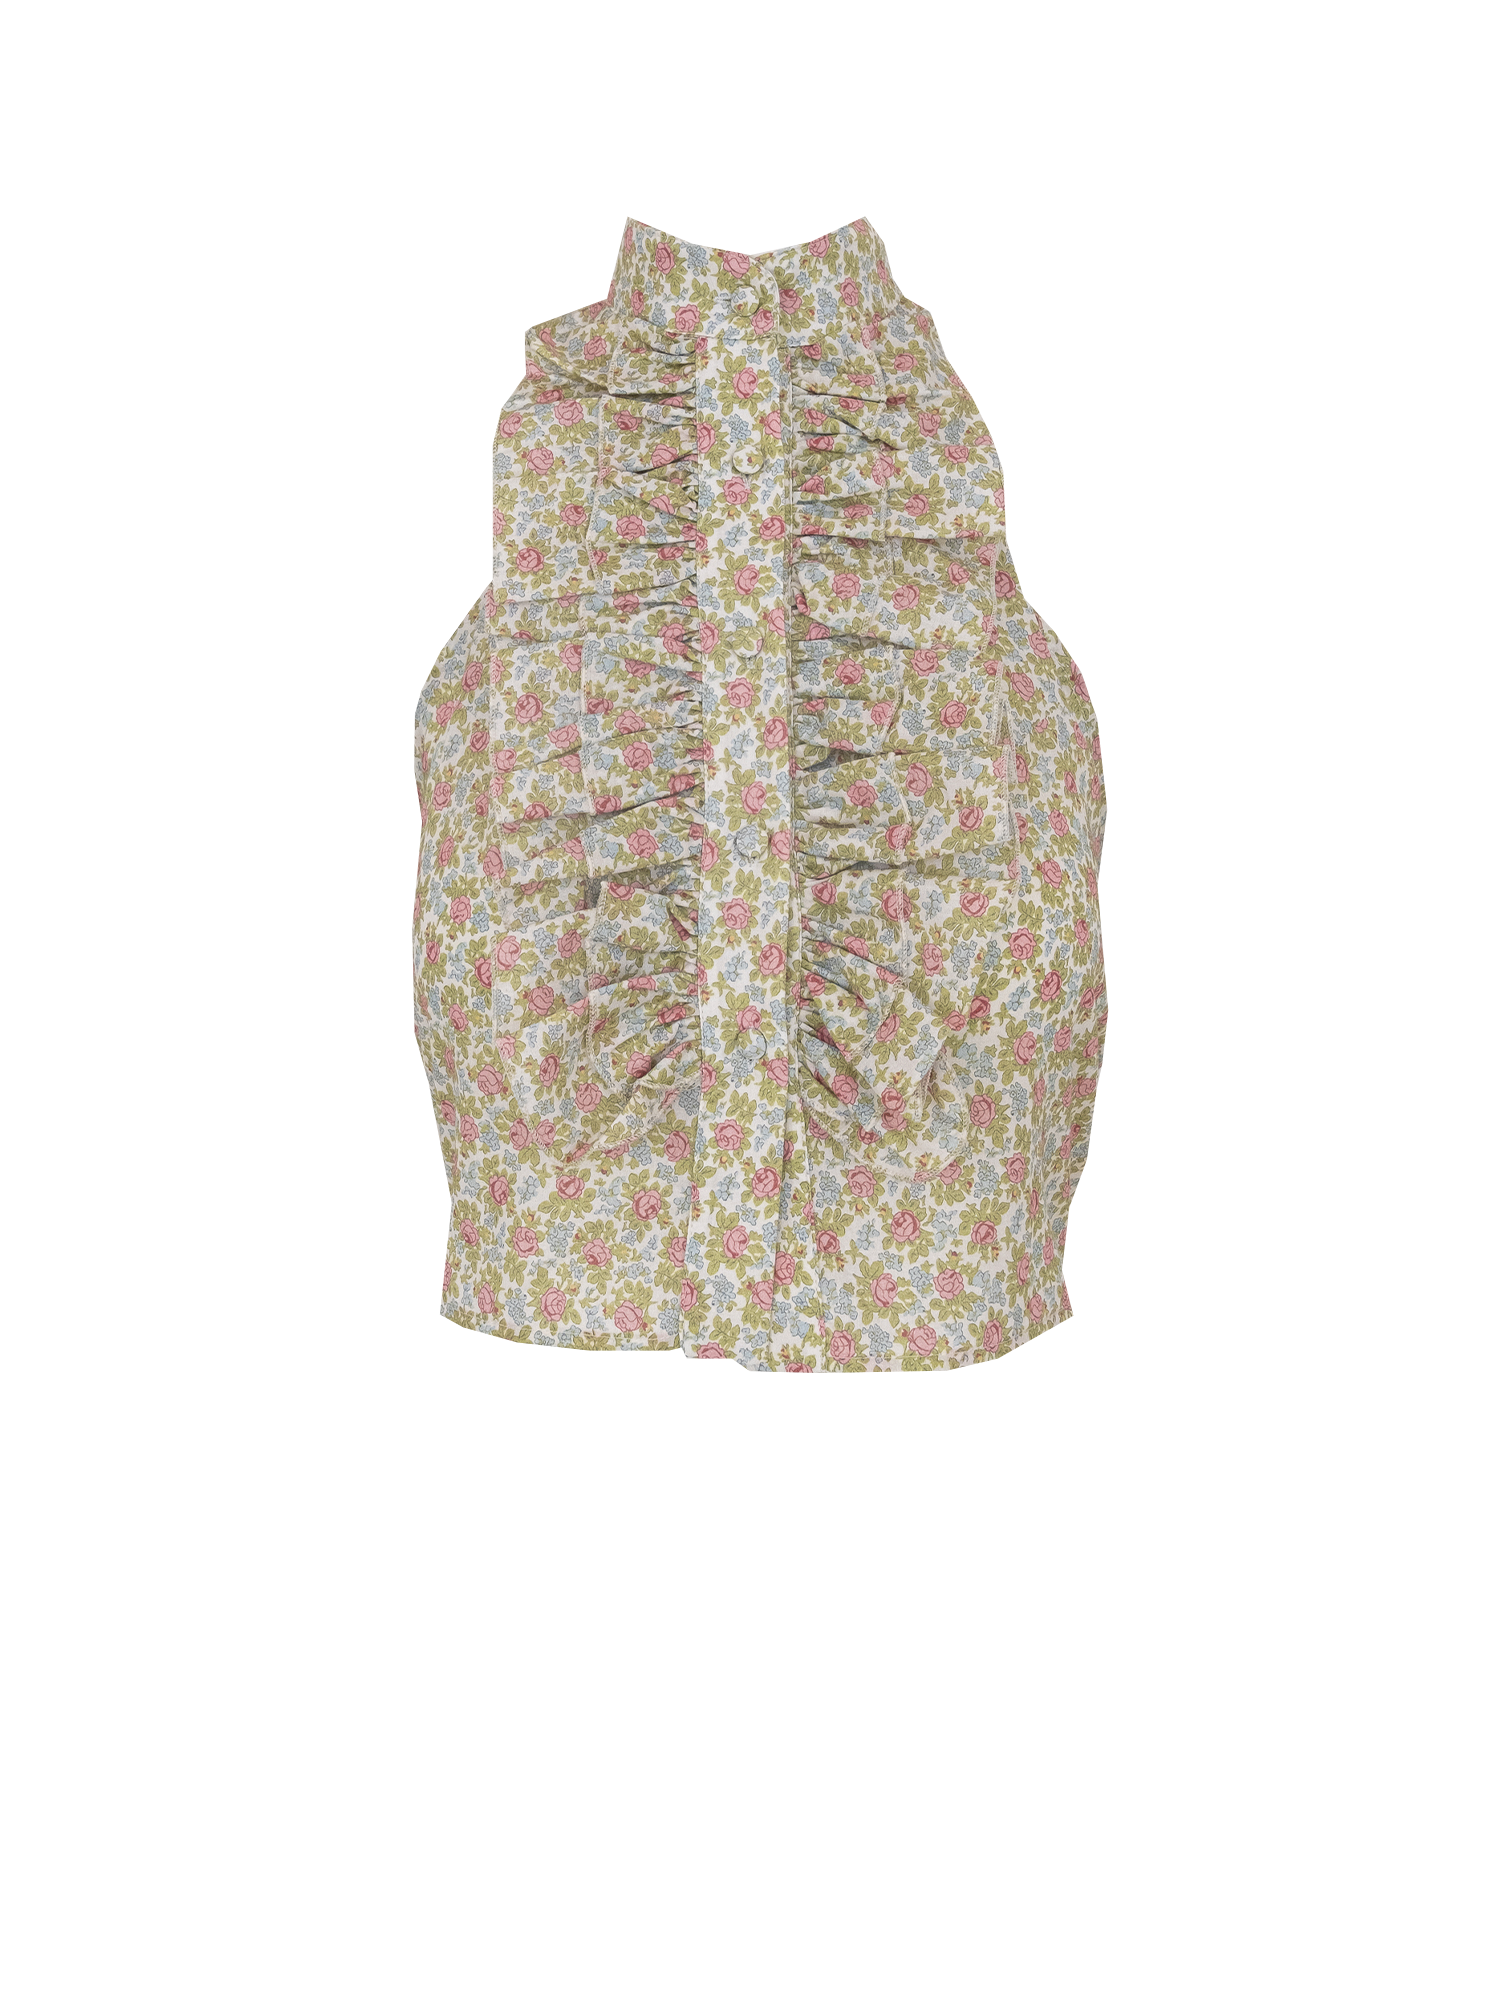 ORCHIDEA - Ephrussi patterned cotton top